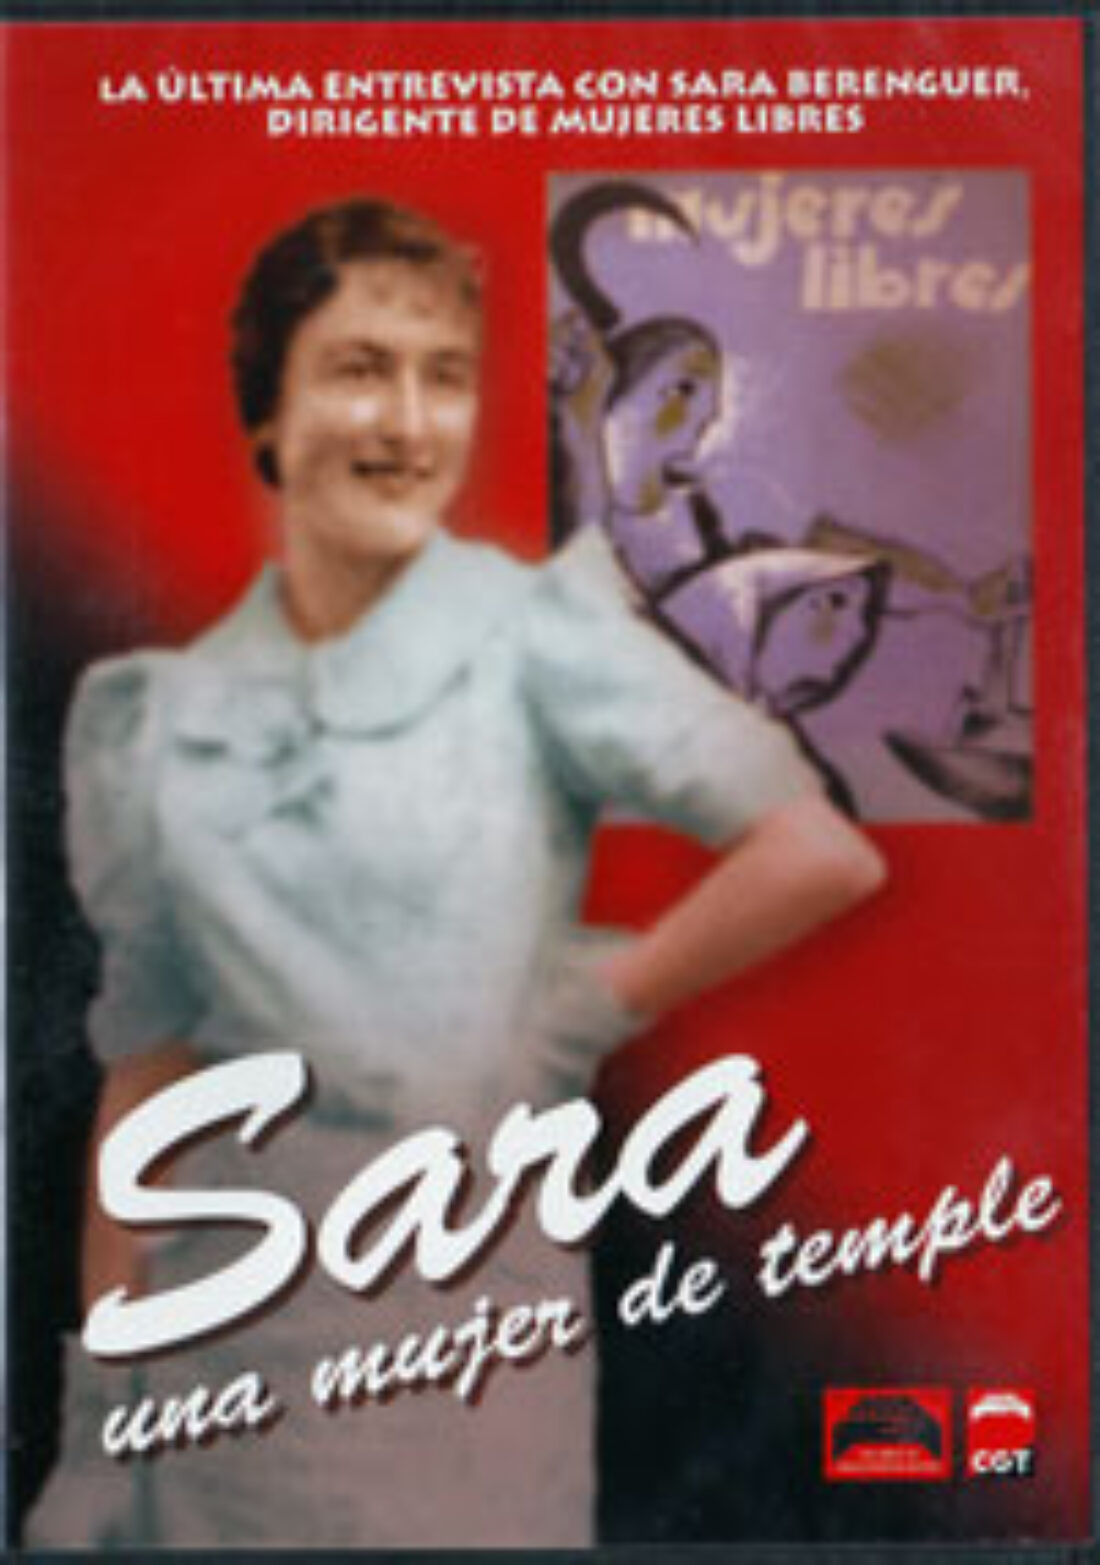 Madrid: «Proyección: Sara una mujer de temple»